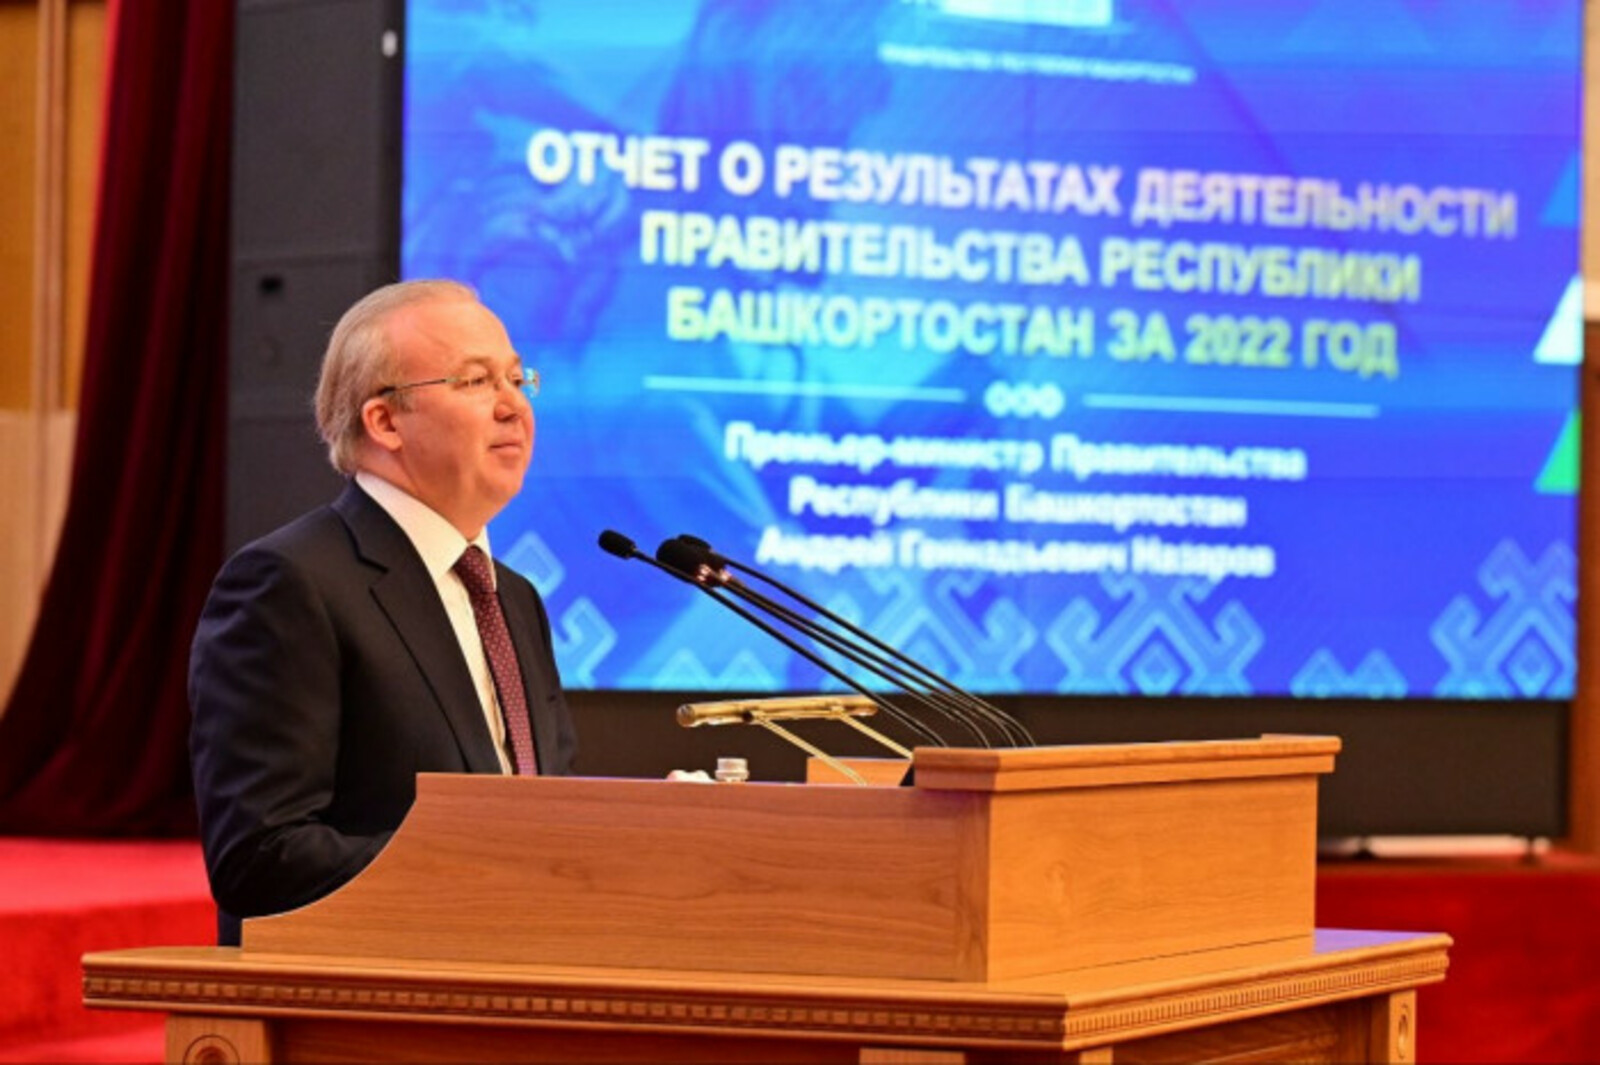 Андрей Назаров: «Башкортостан должен стать лидером по реализации реформы обращения с твердыми коммунальными отходами»